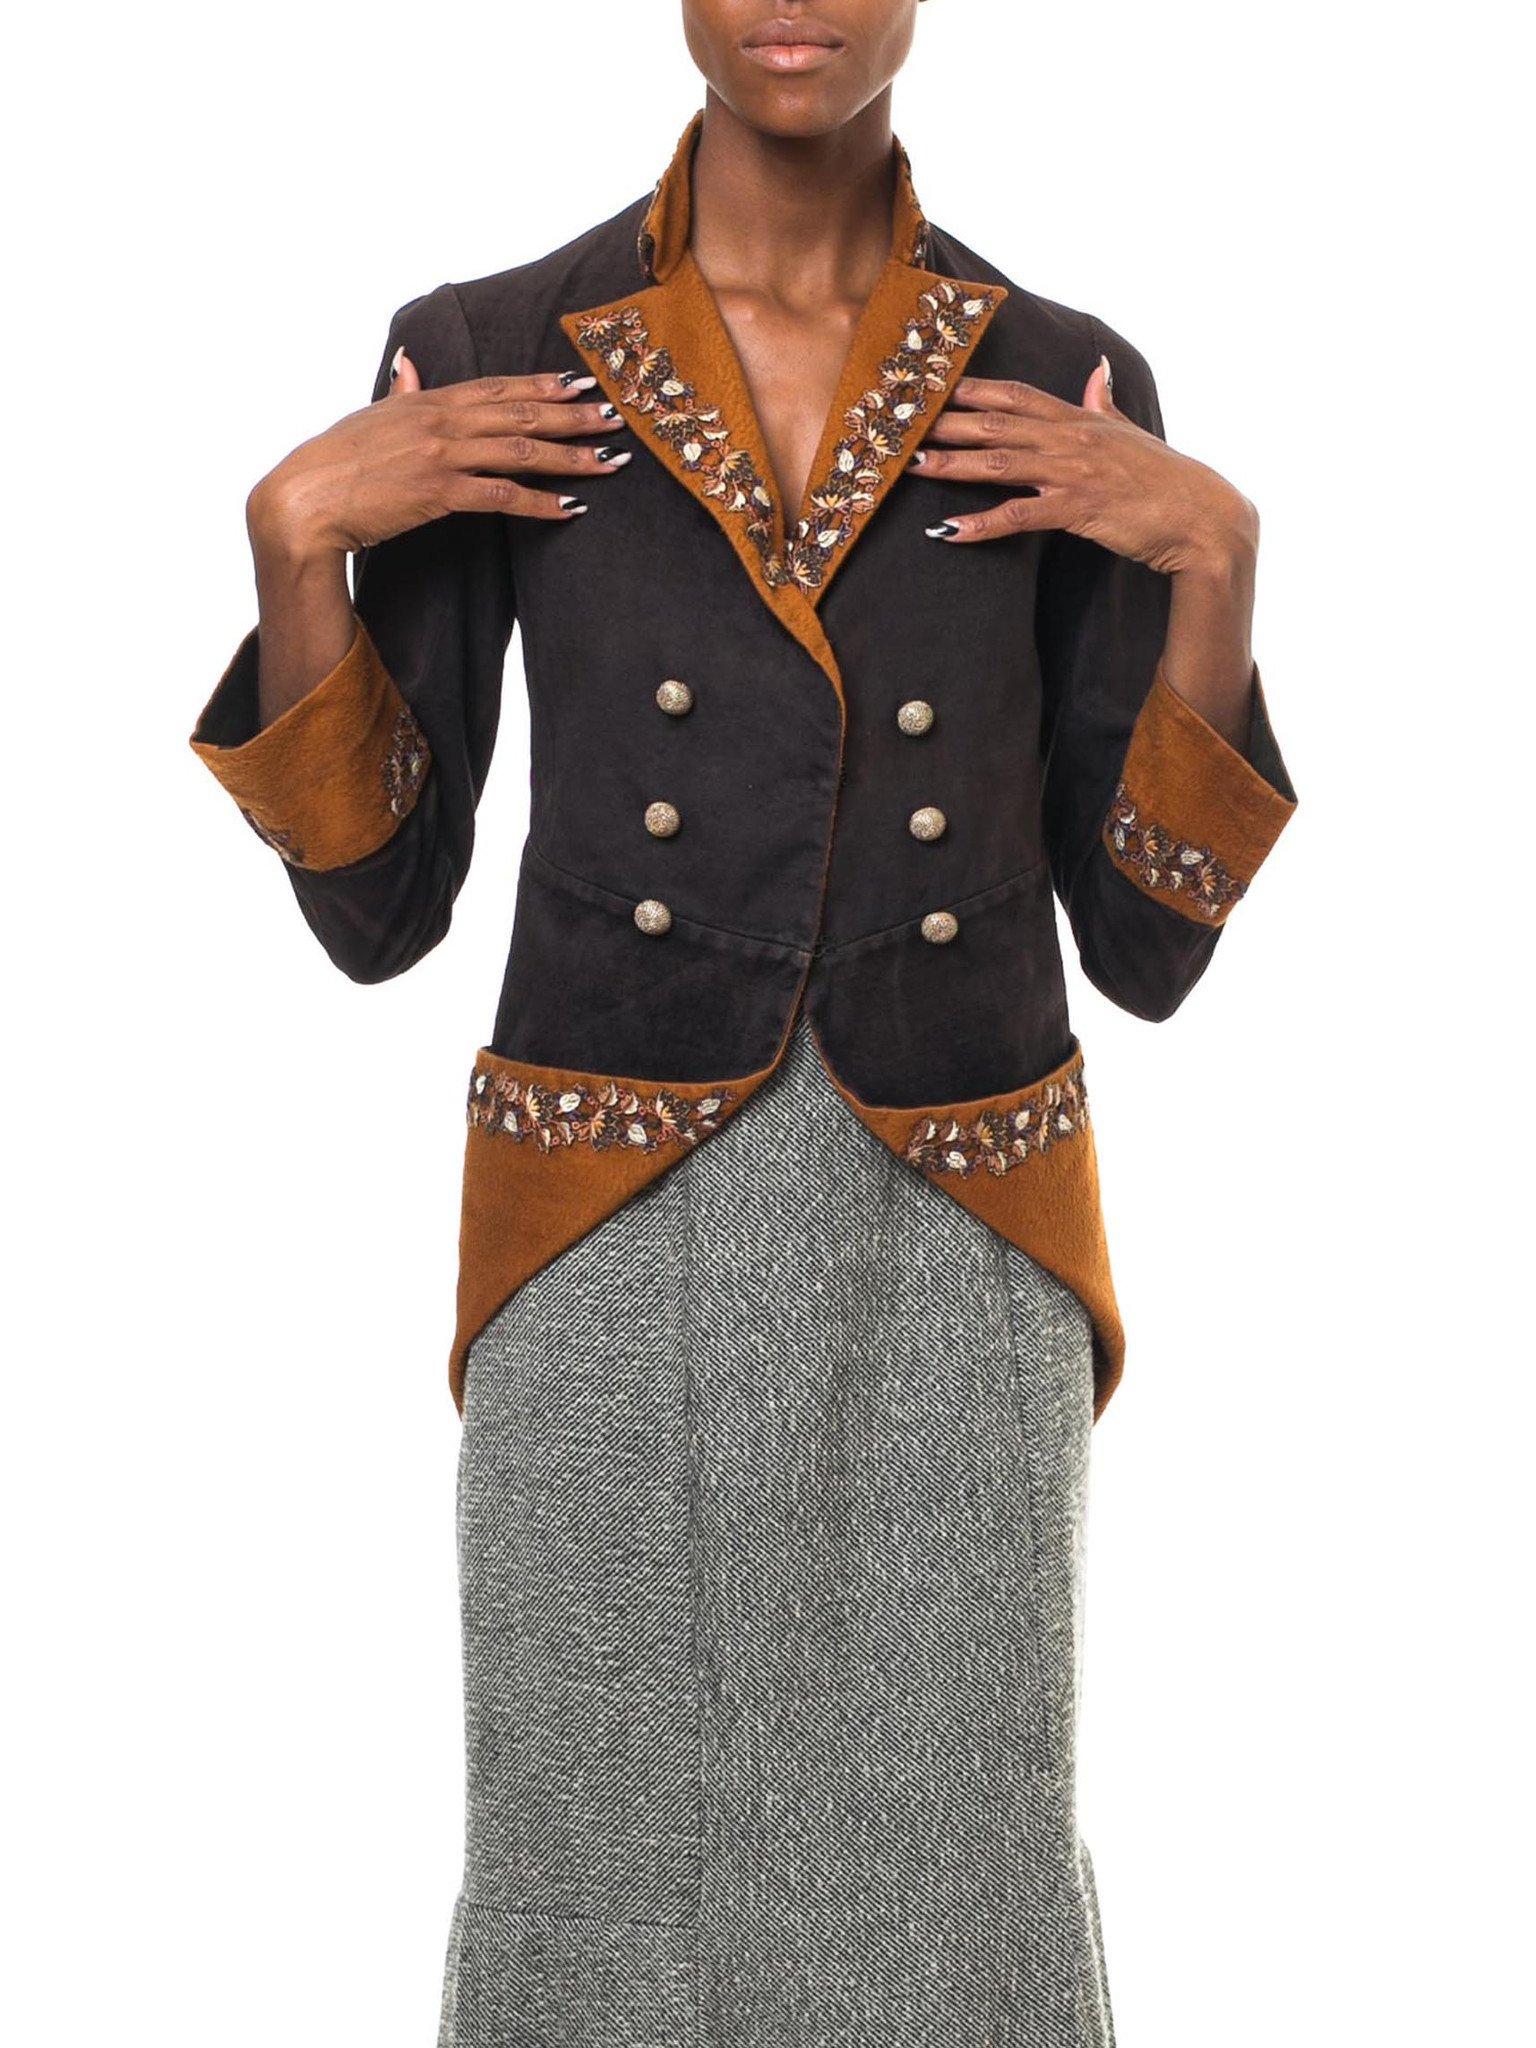 Veste victorienne en velours de coton et de laine marron 1880S 18Th Century Revival Redingote Jacket With Floral Embroidered Trim 60's Gold Buttons